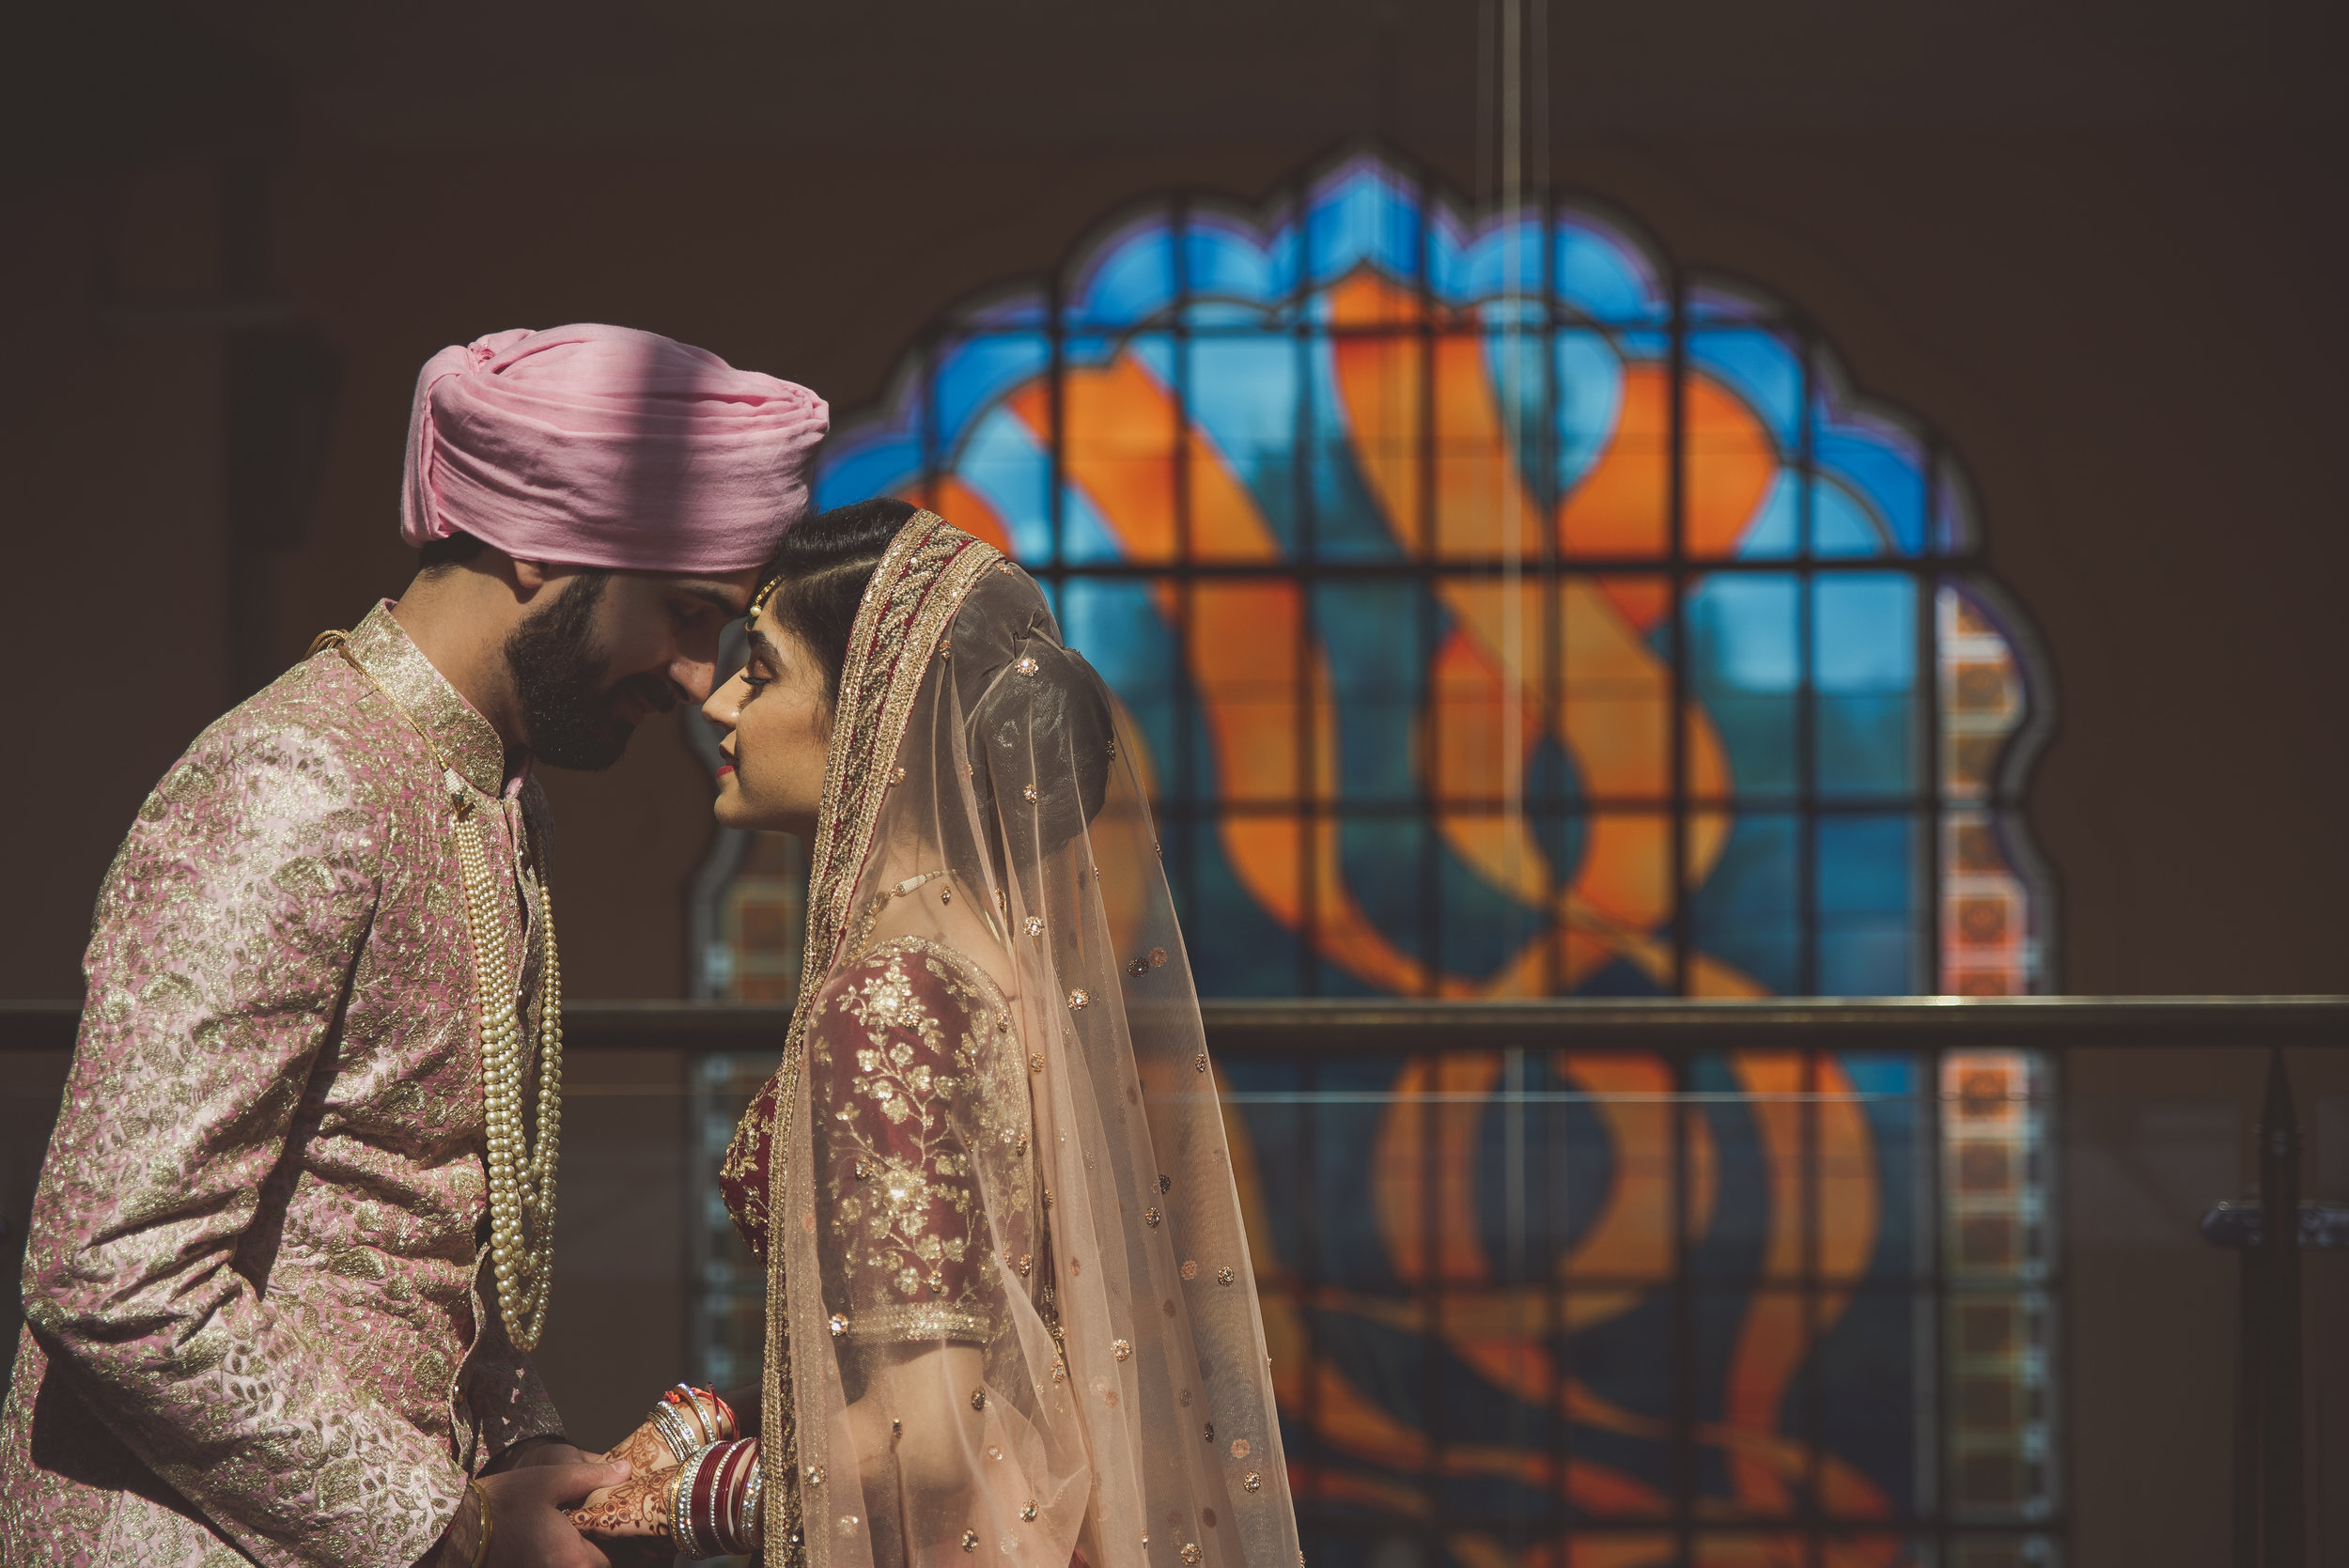 Sikh wedding photography, Hindu wedding photography